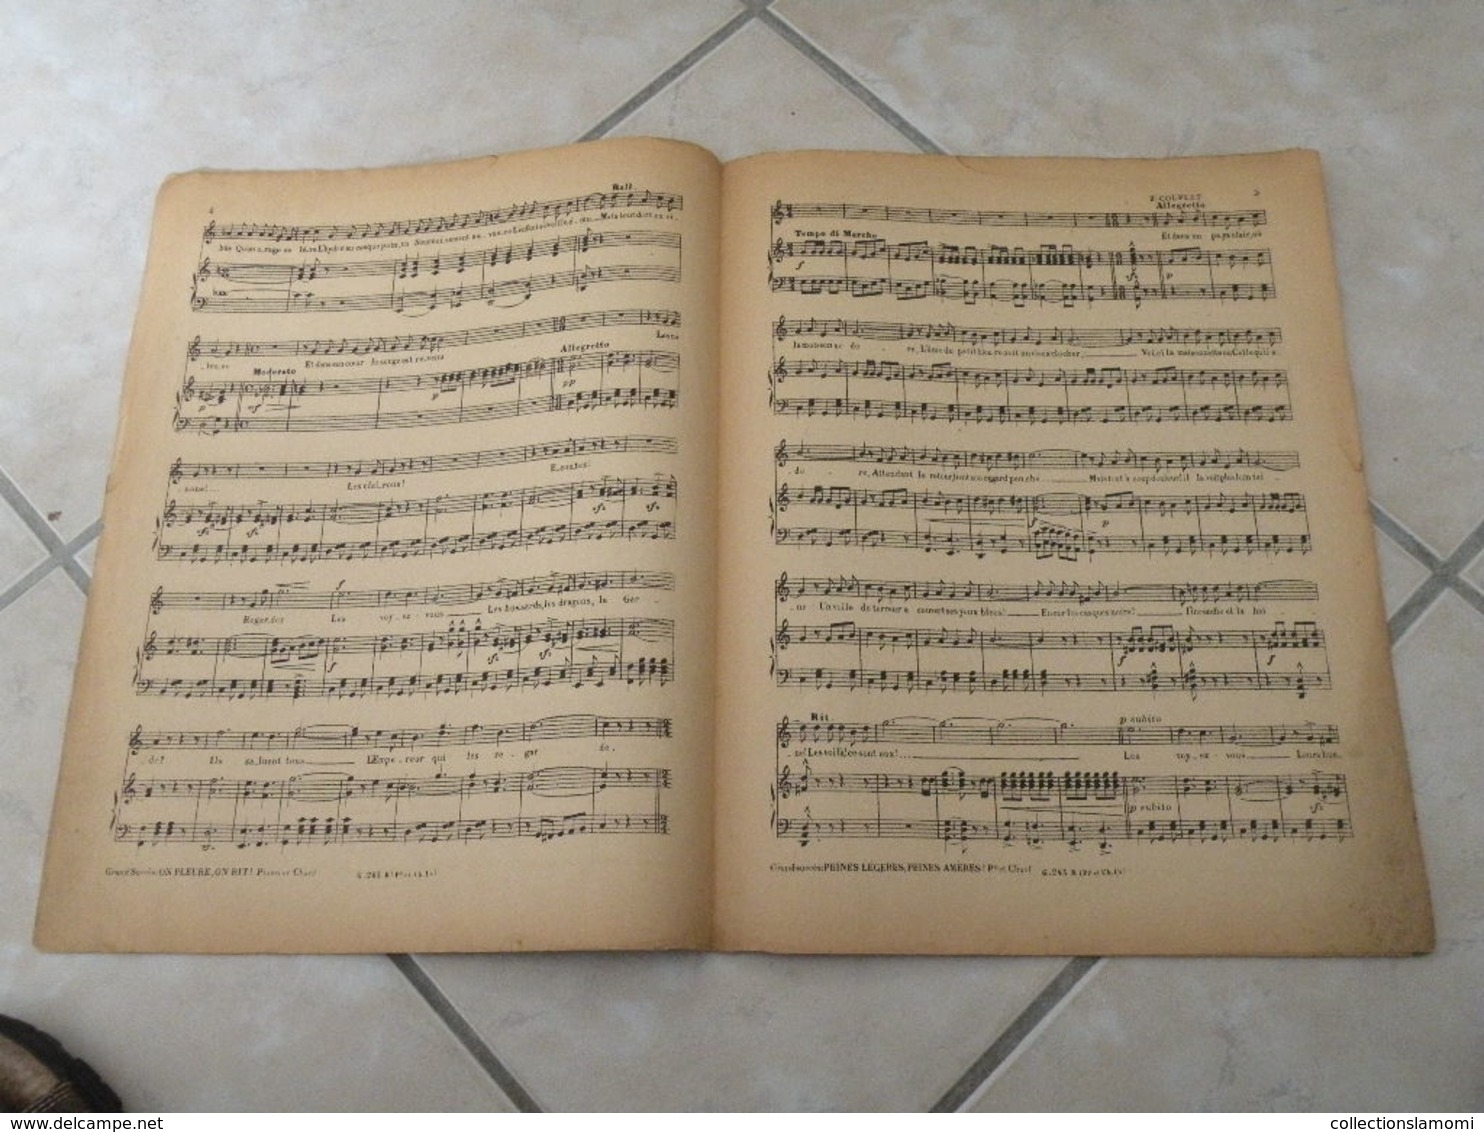 Le Rêve Passe -(Musique Ch. Helmer & G. Krier (Paroles Armand Foucher)- Partition (Piano)1918 - Instruments à Clavier